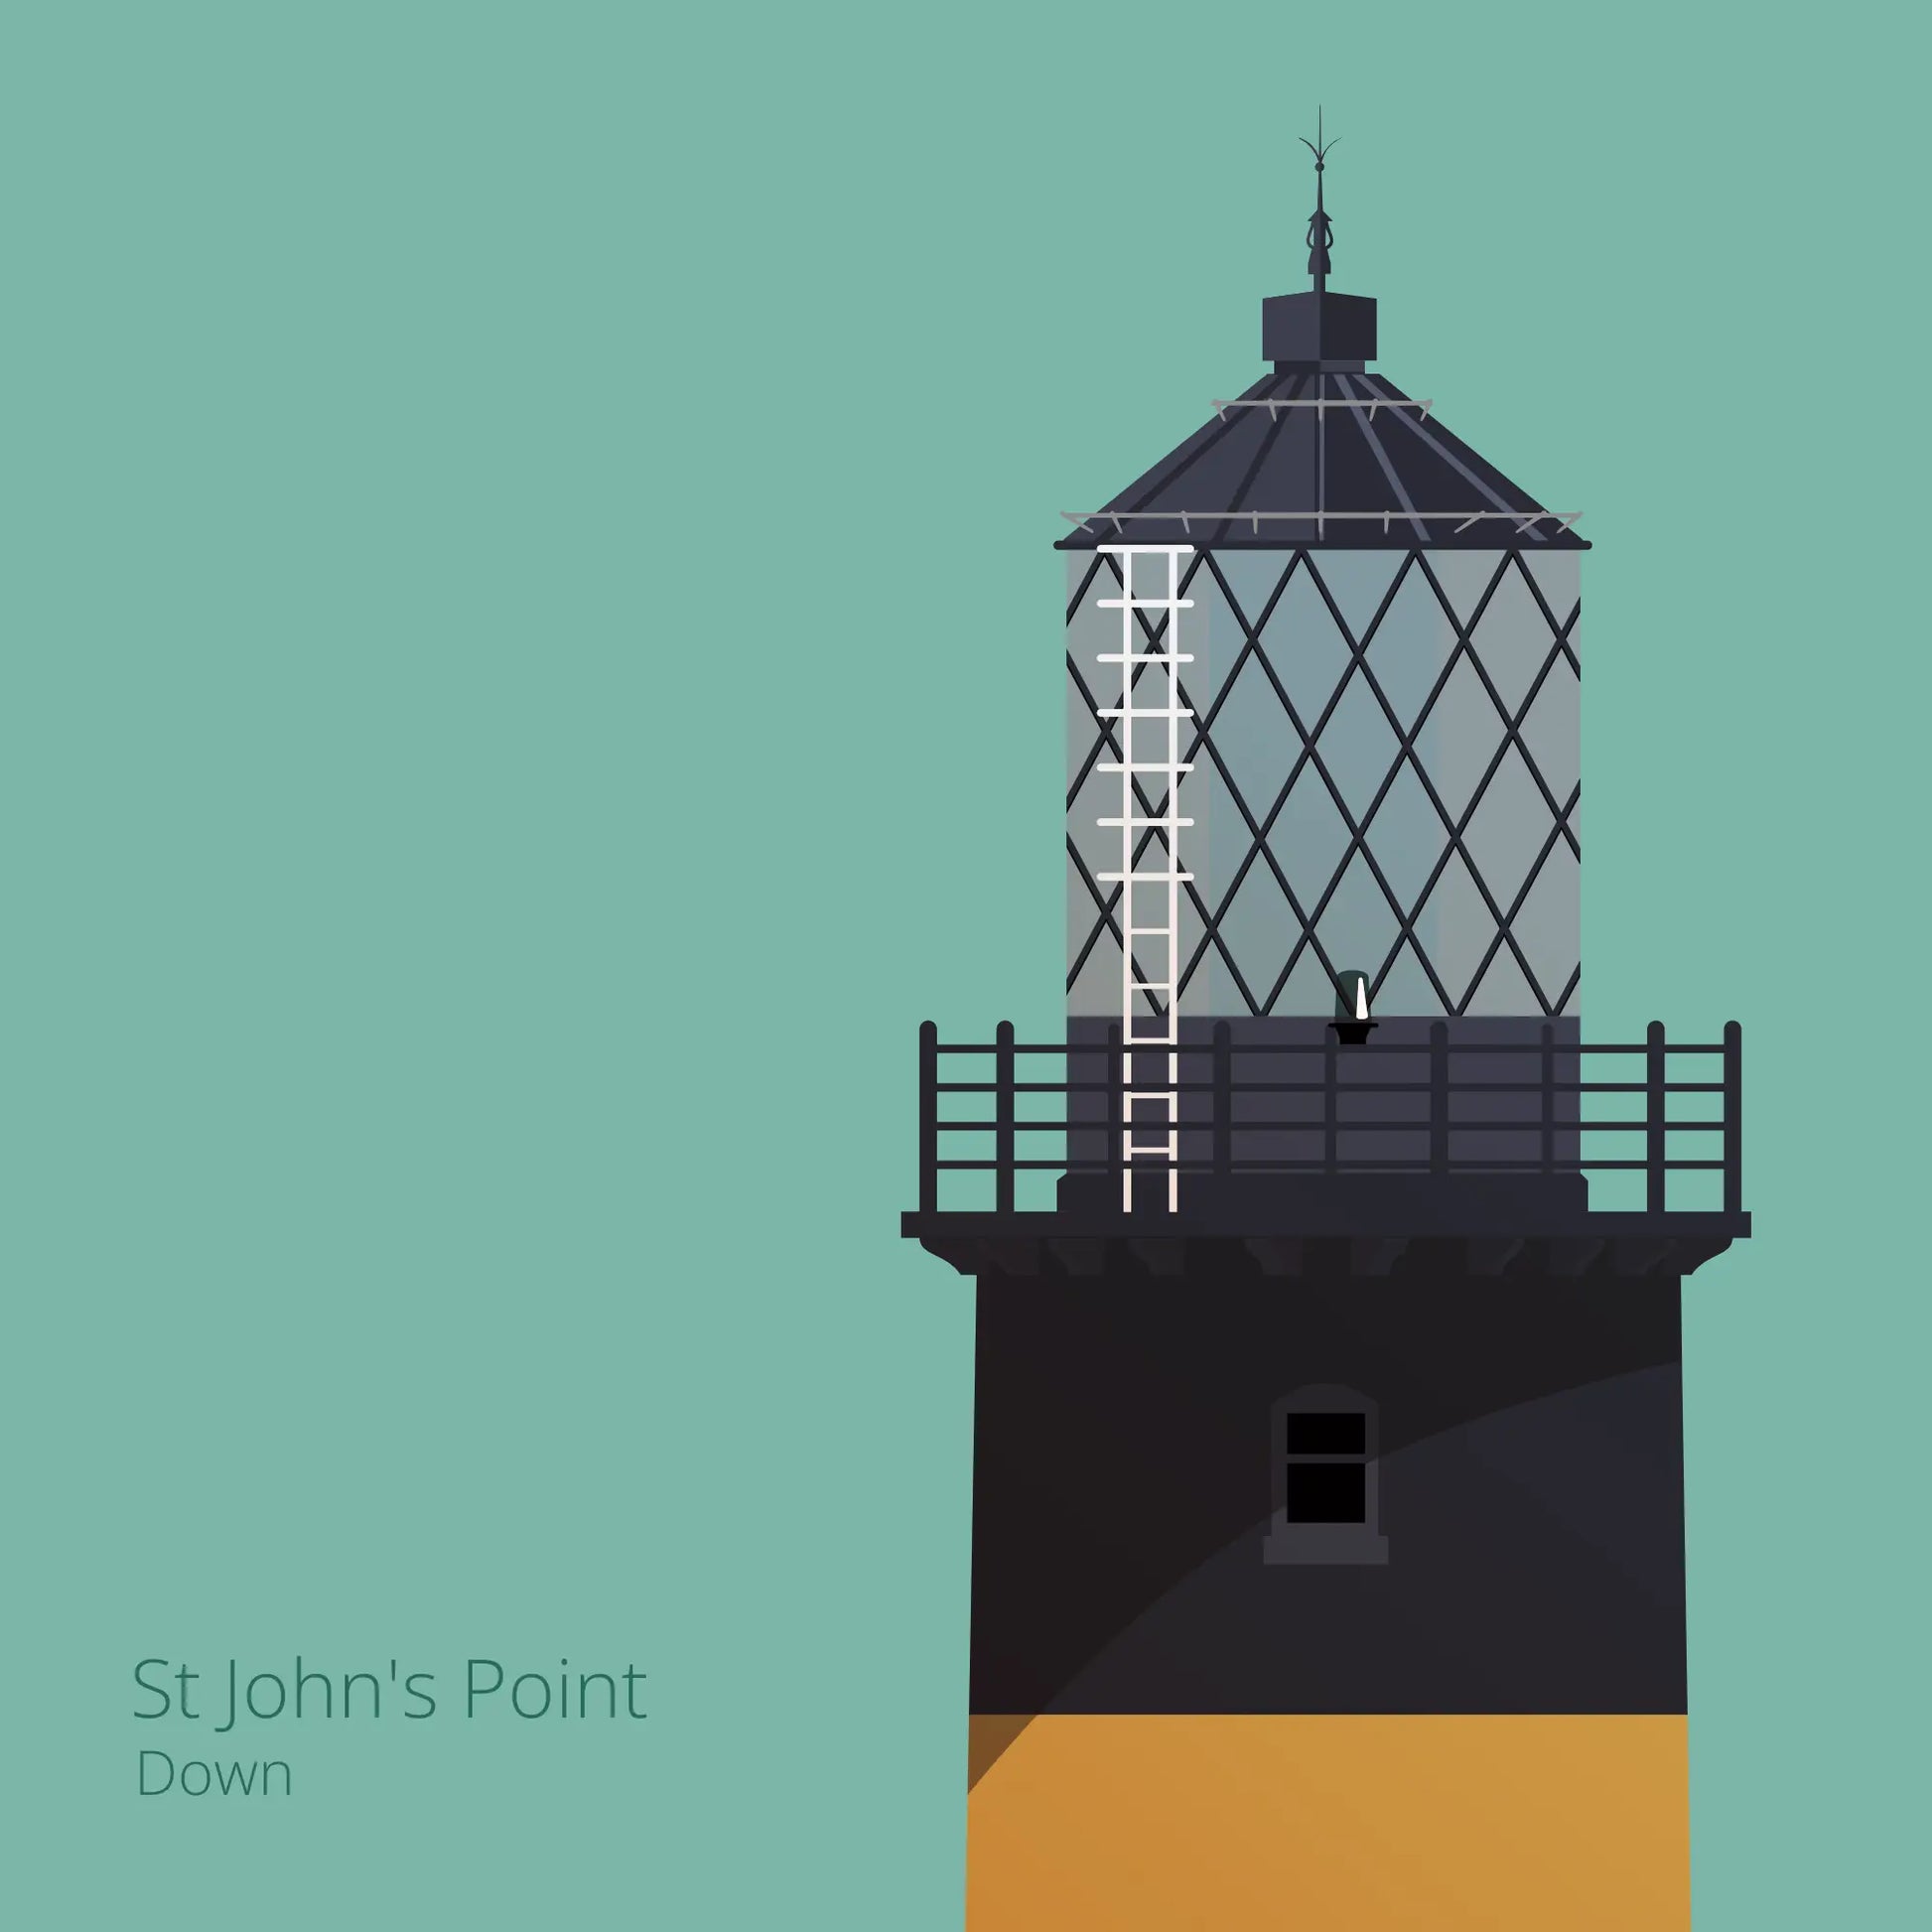 Illustration of St.John's (Down) lighthouse on an ocean green background